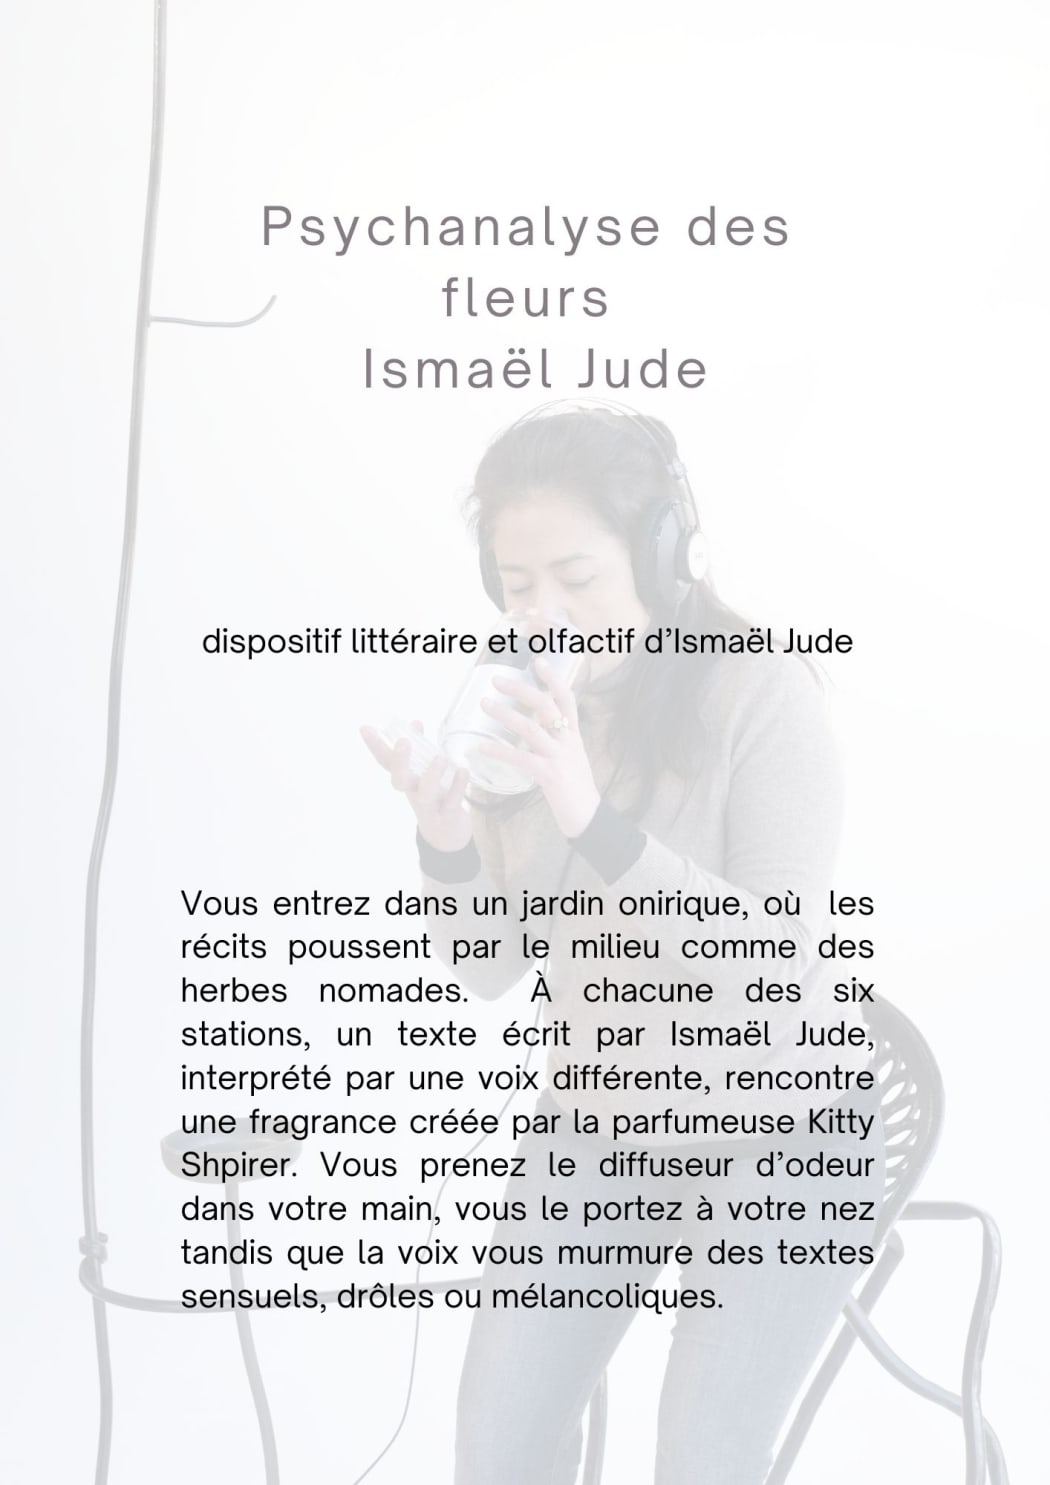 2023 : ismael jude, psychanalyse des fleurs